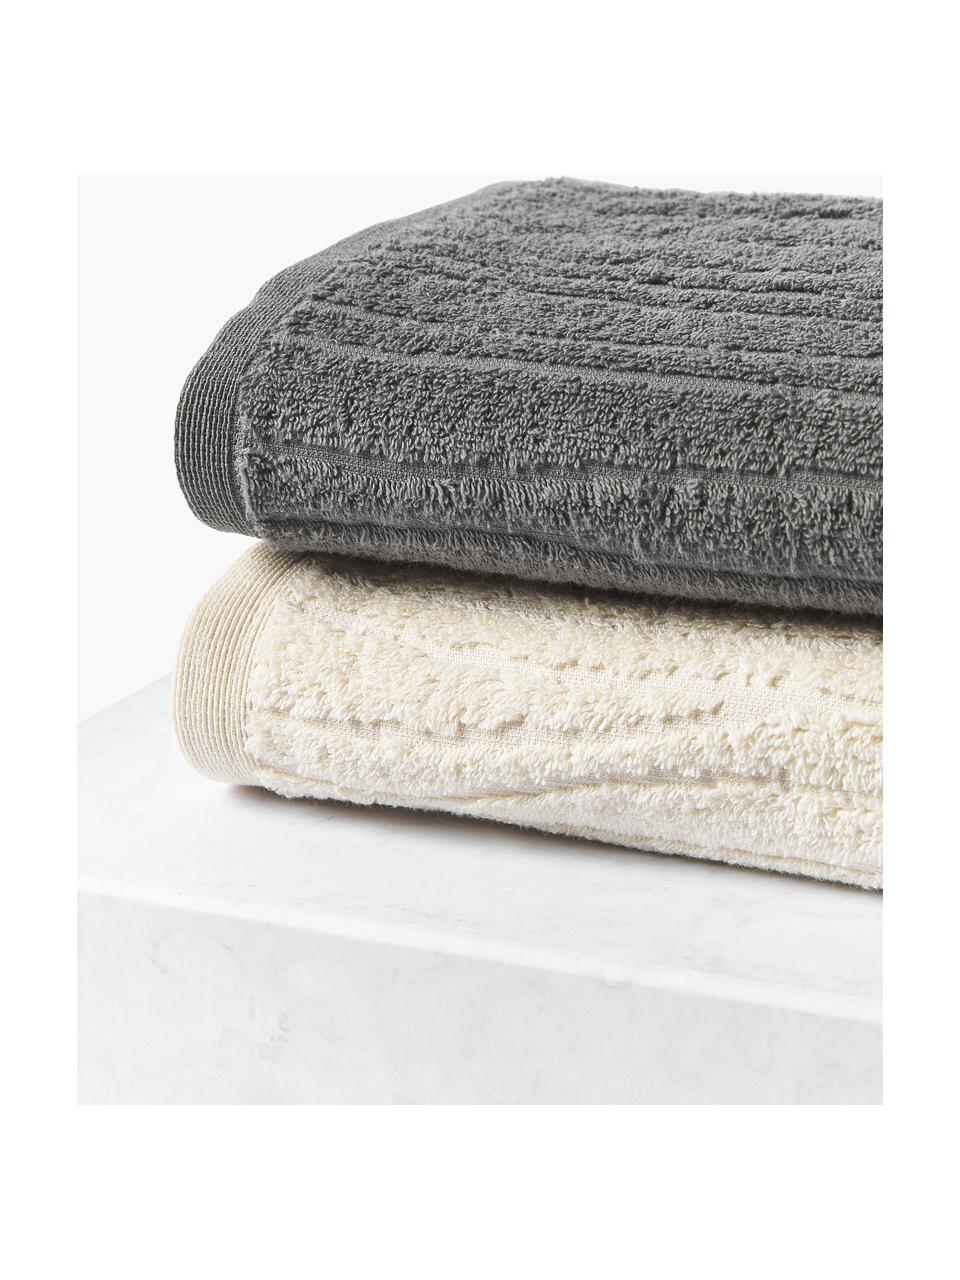 Set de toallas Audrina, tamaños diferentes, Gris oscuro, Set de 3 (toalla tocador, toalla lavabo y toalla ducha)